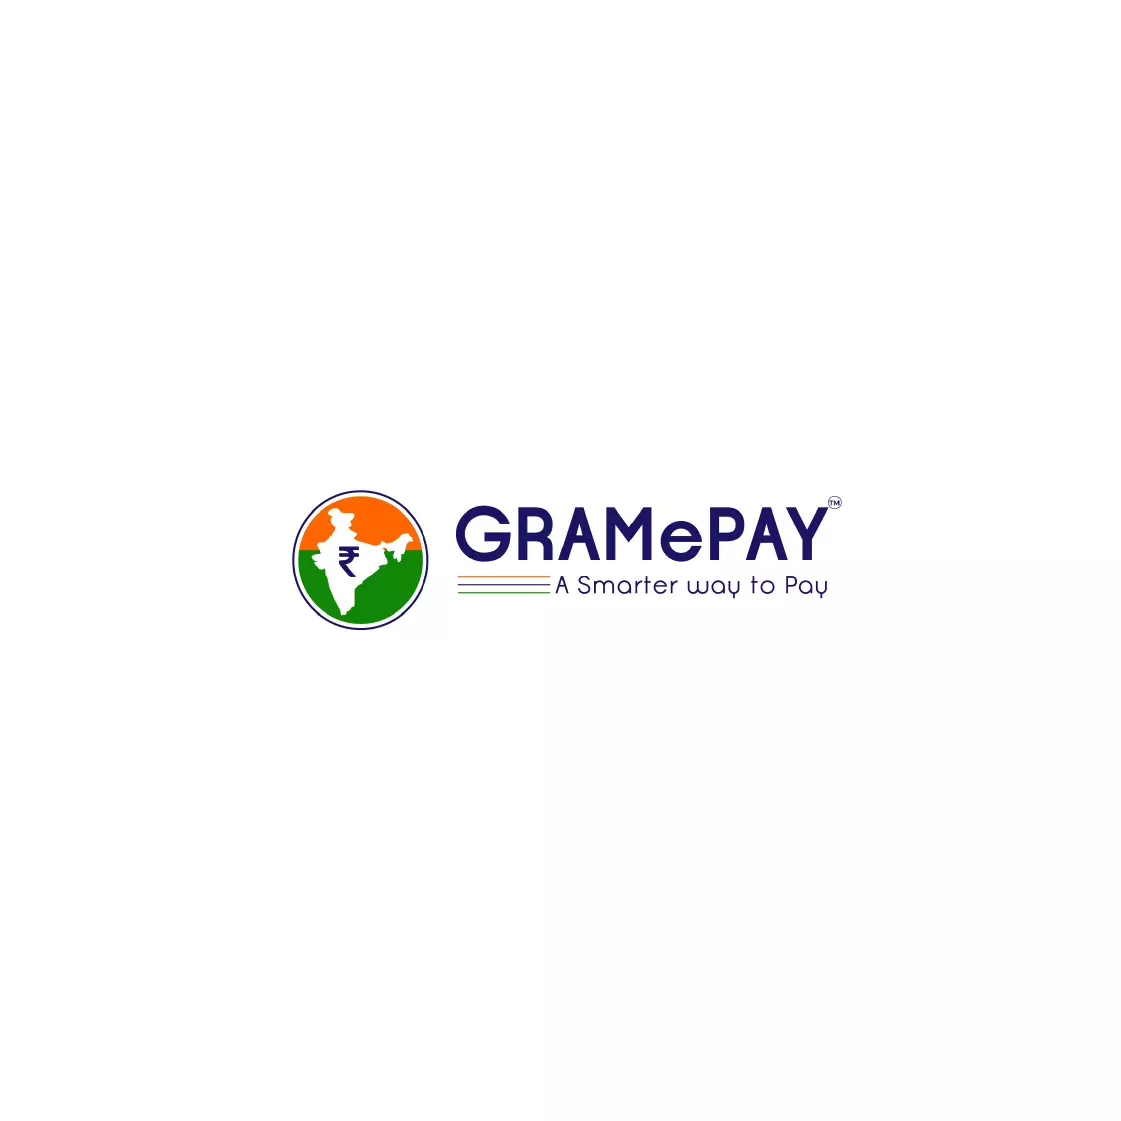 GramEpay